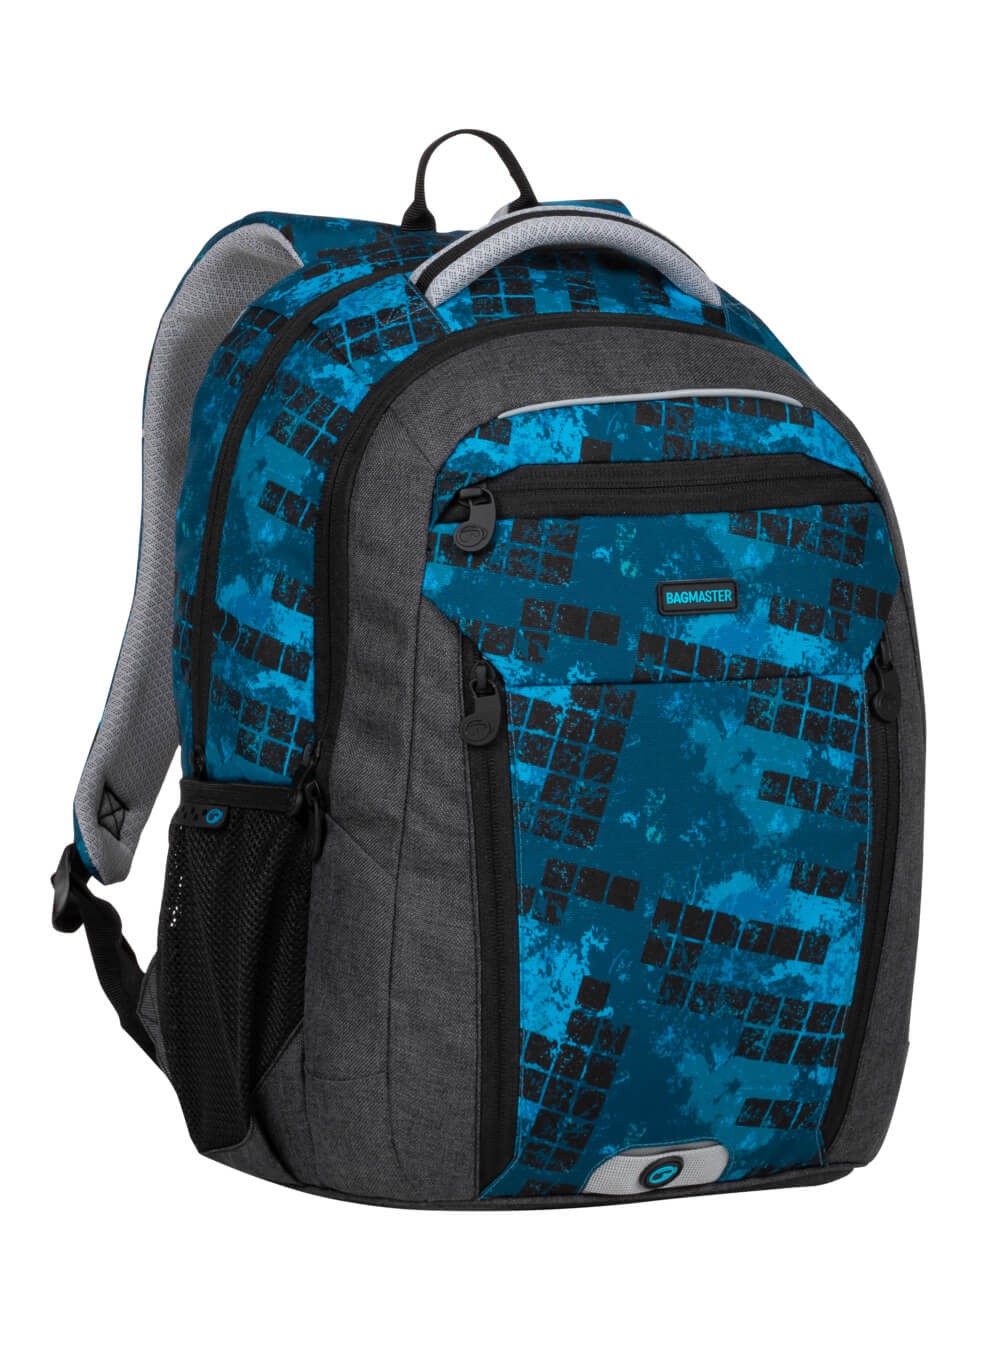 Školní dvoukomorový batoh BOSTON 20 B modrý s černými kostkami